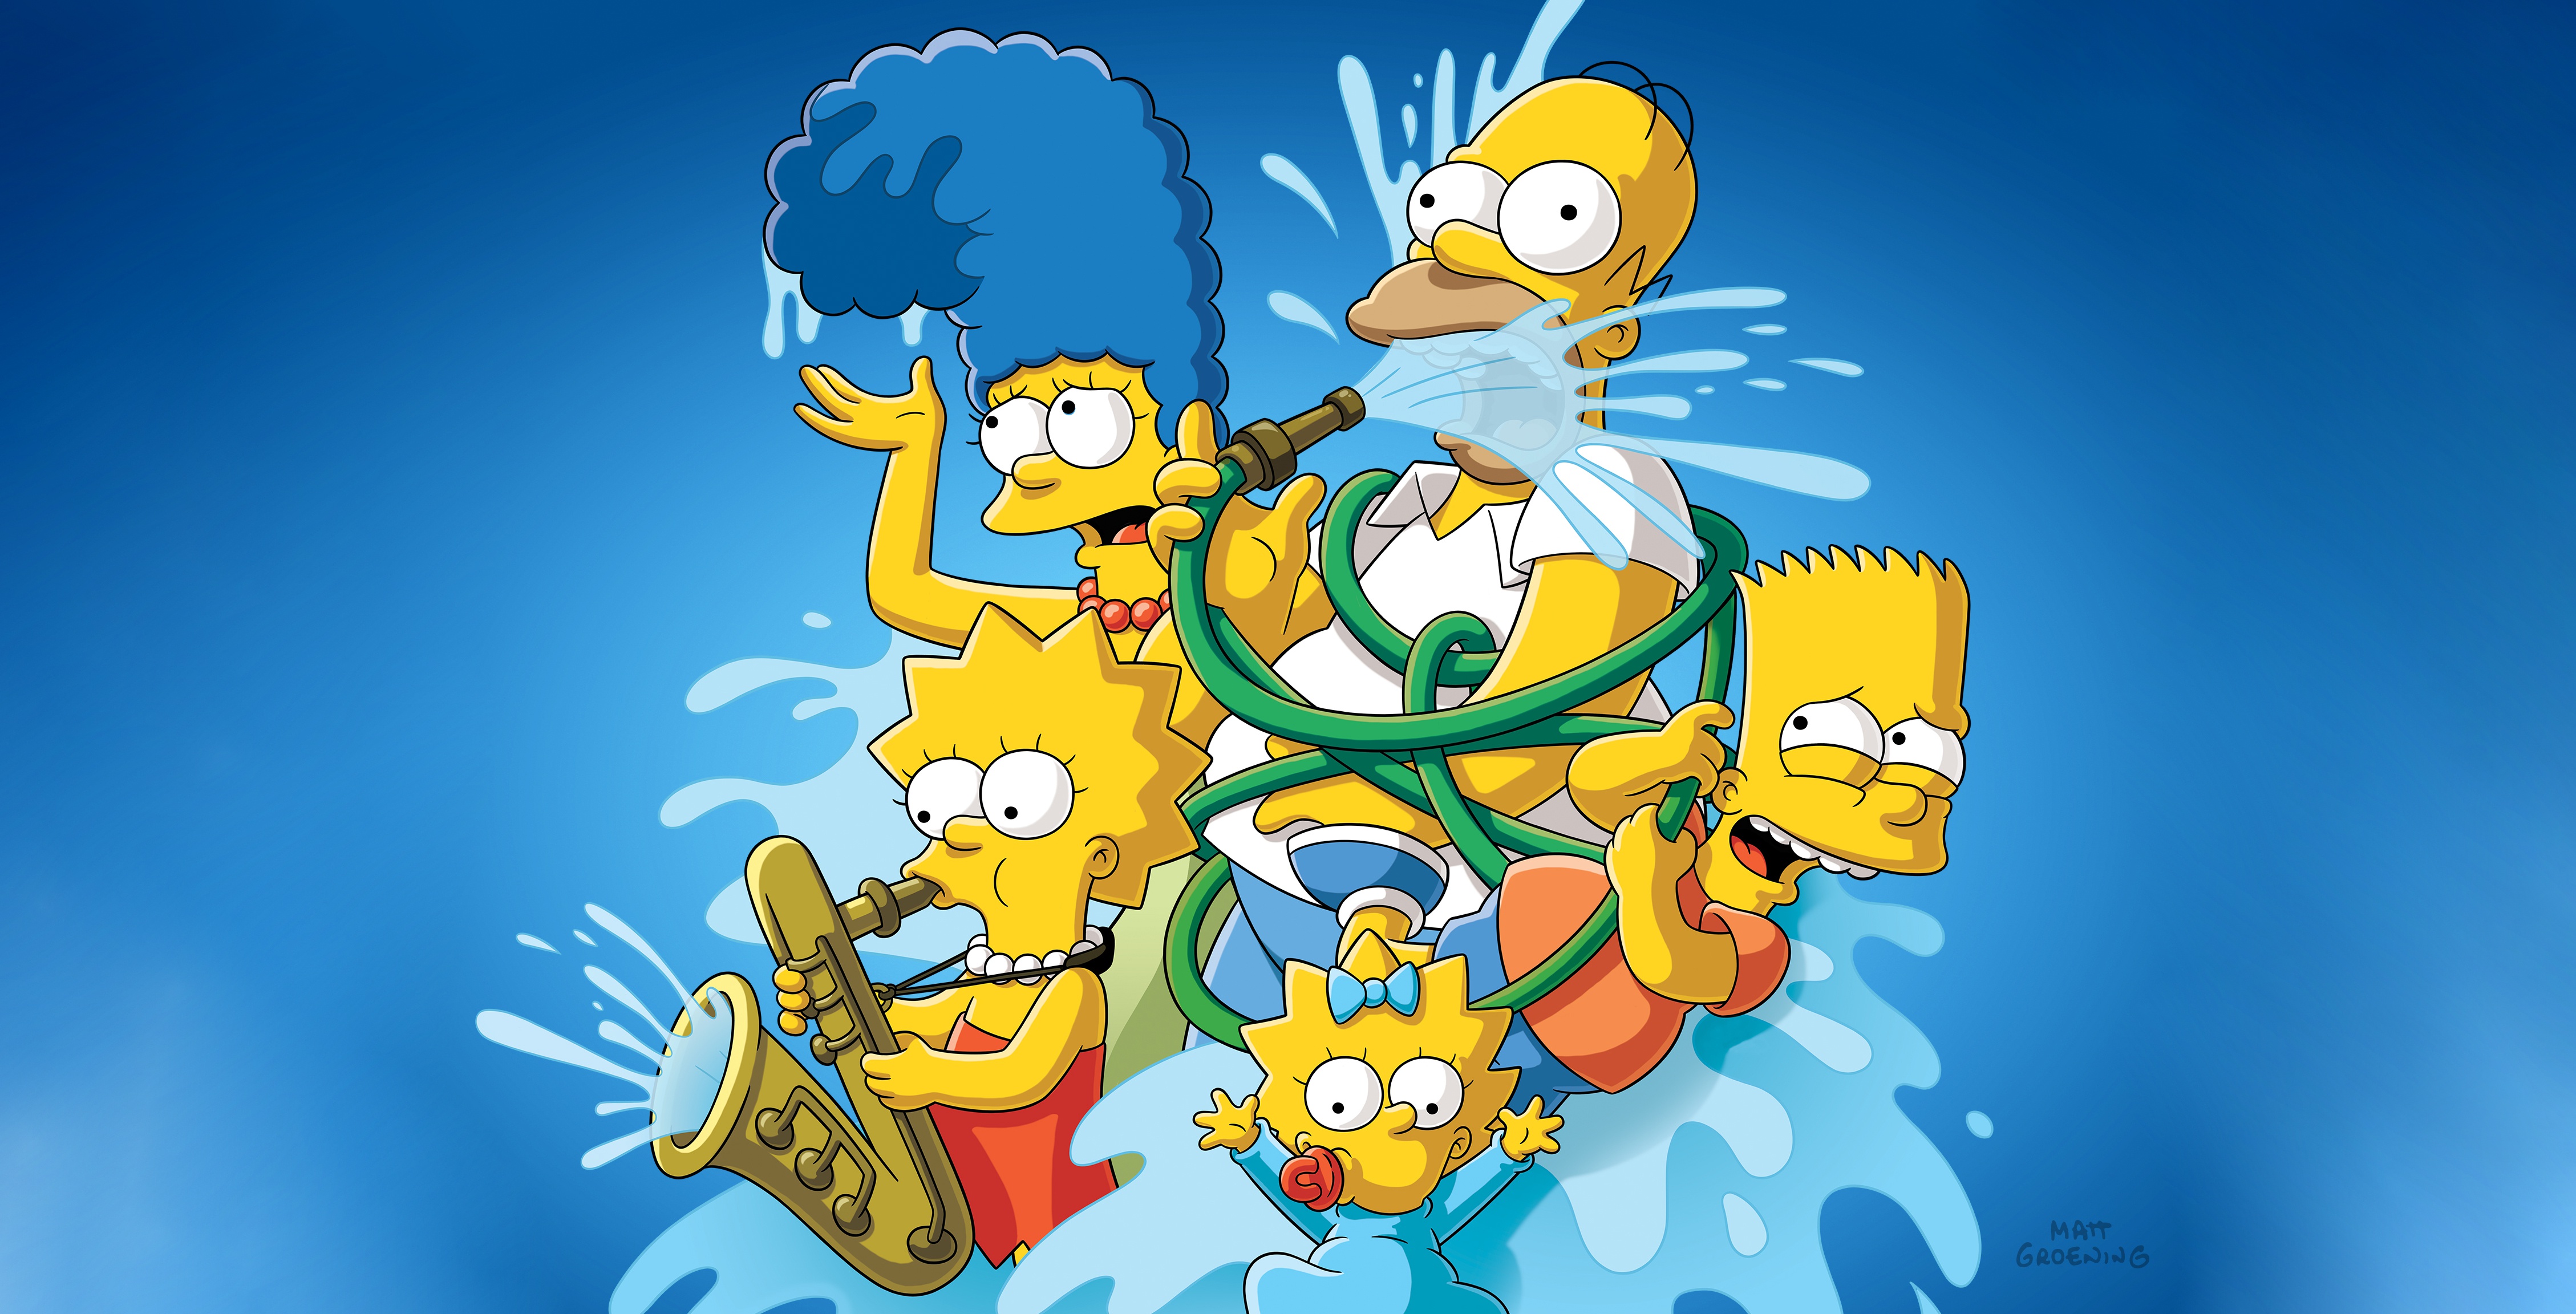 Bart Simpson Cartoon Homer Simpson Lisa Simpson Maggie Simpson Marge Simpson The Simpsons 4516x2304